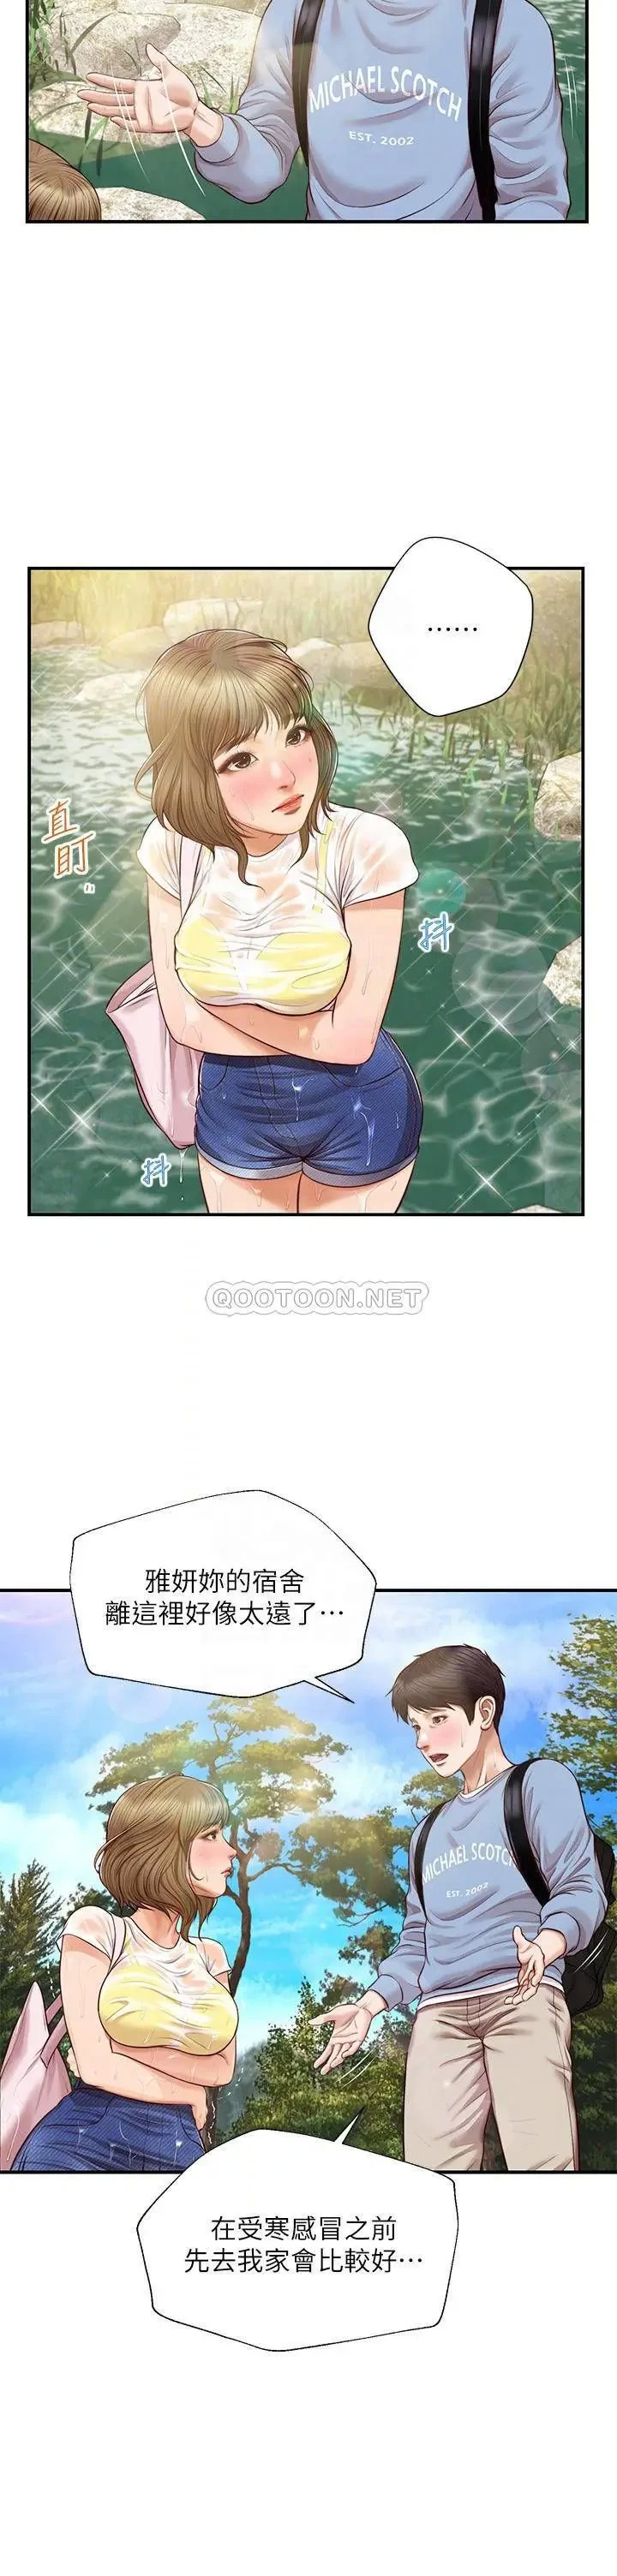 《纯情的崩坏》漫画 第20话 第一次看到雅妍裸体